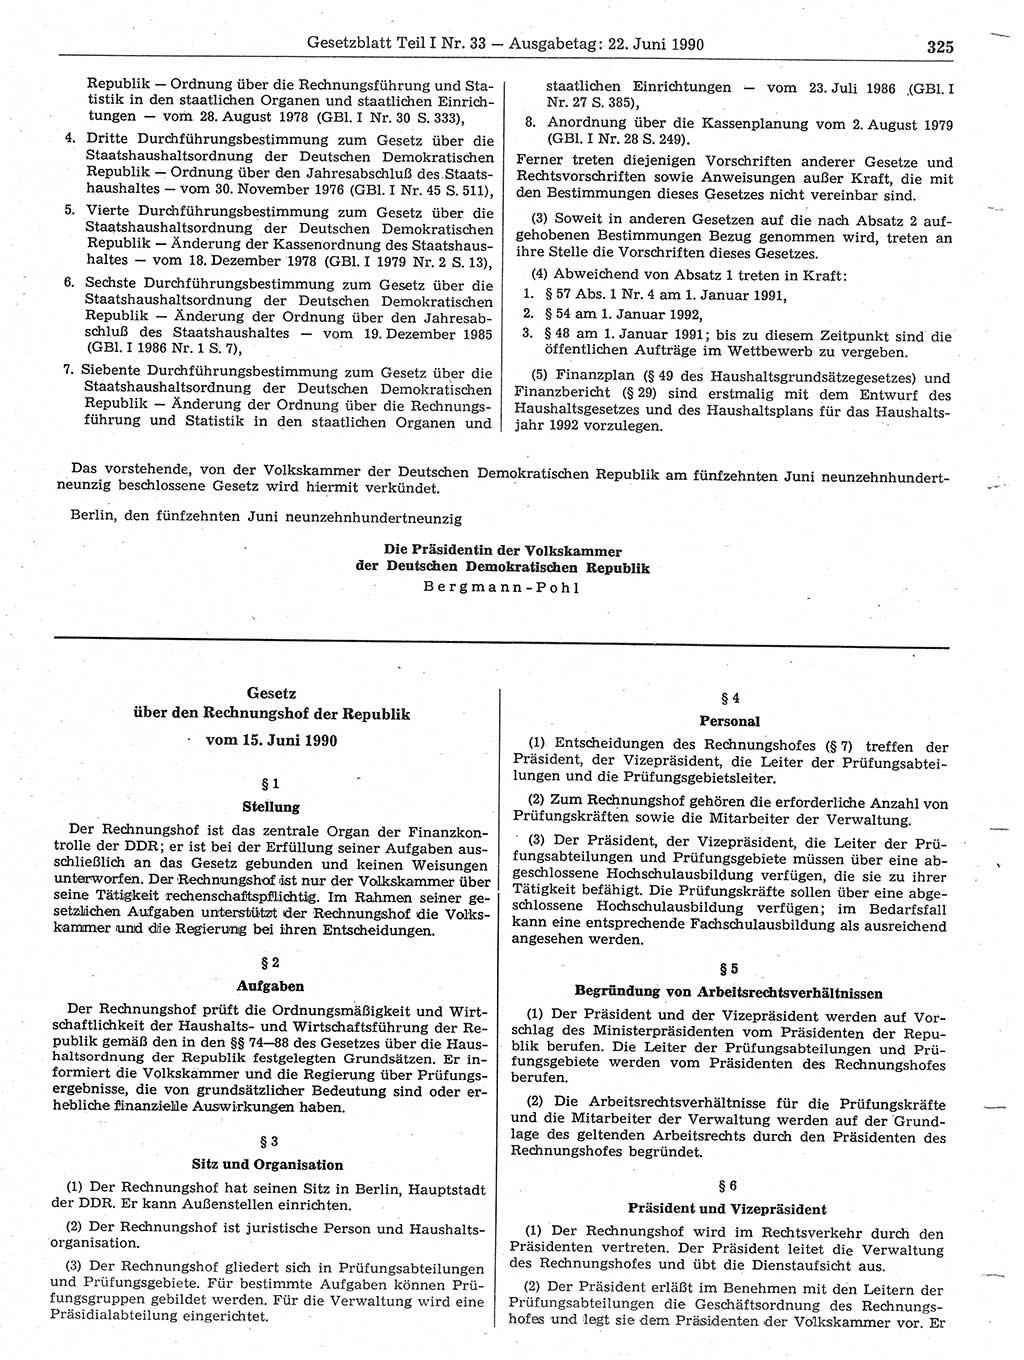 Gesetzblatt (GBl.) der Deutschen Demokratischen Republik (DDR) Teil Ⅰ 1990, Seite 325 (GBl. DDR Ⅰ 1990, S. 325)